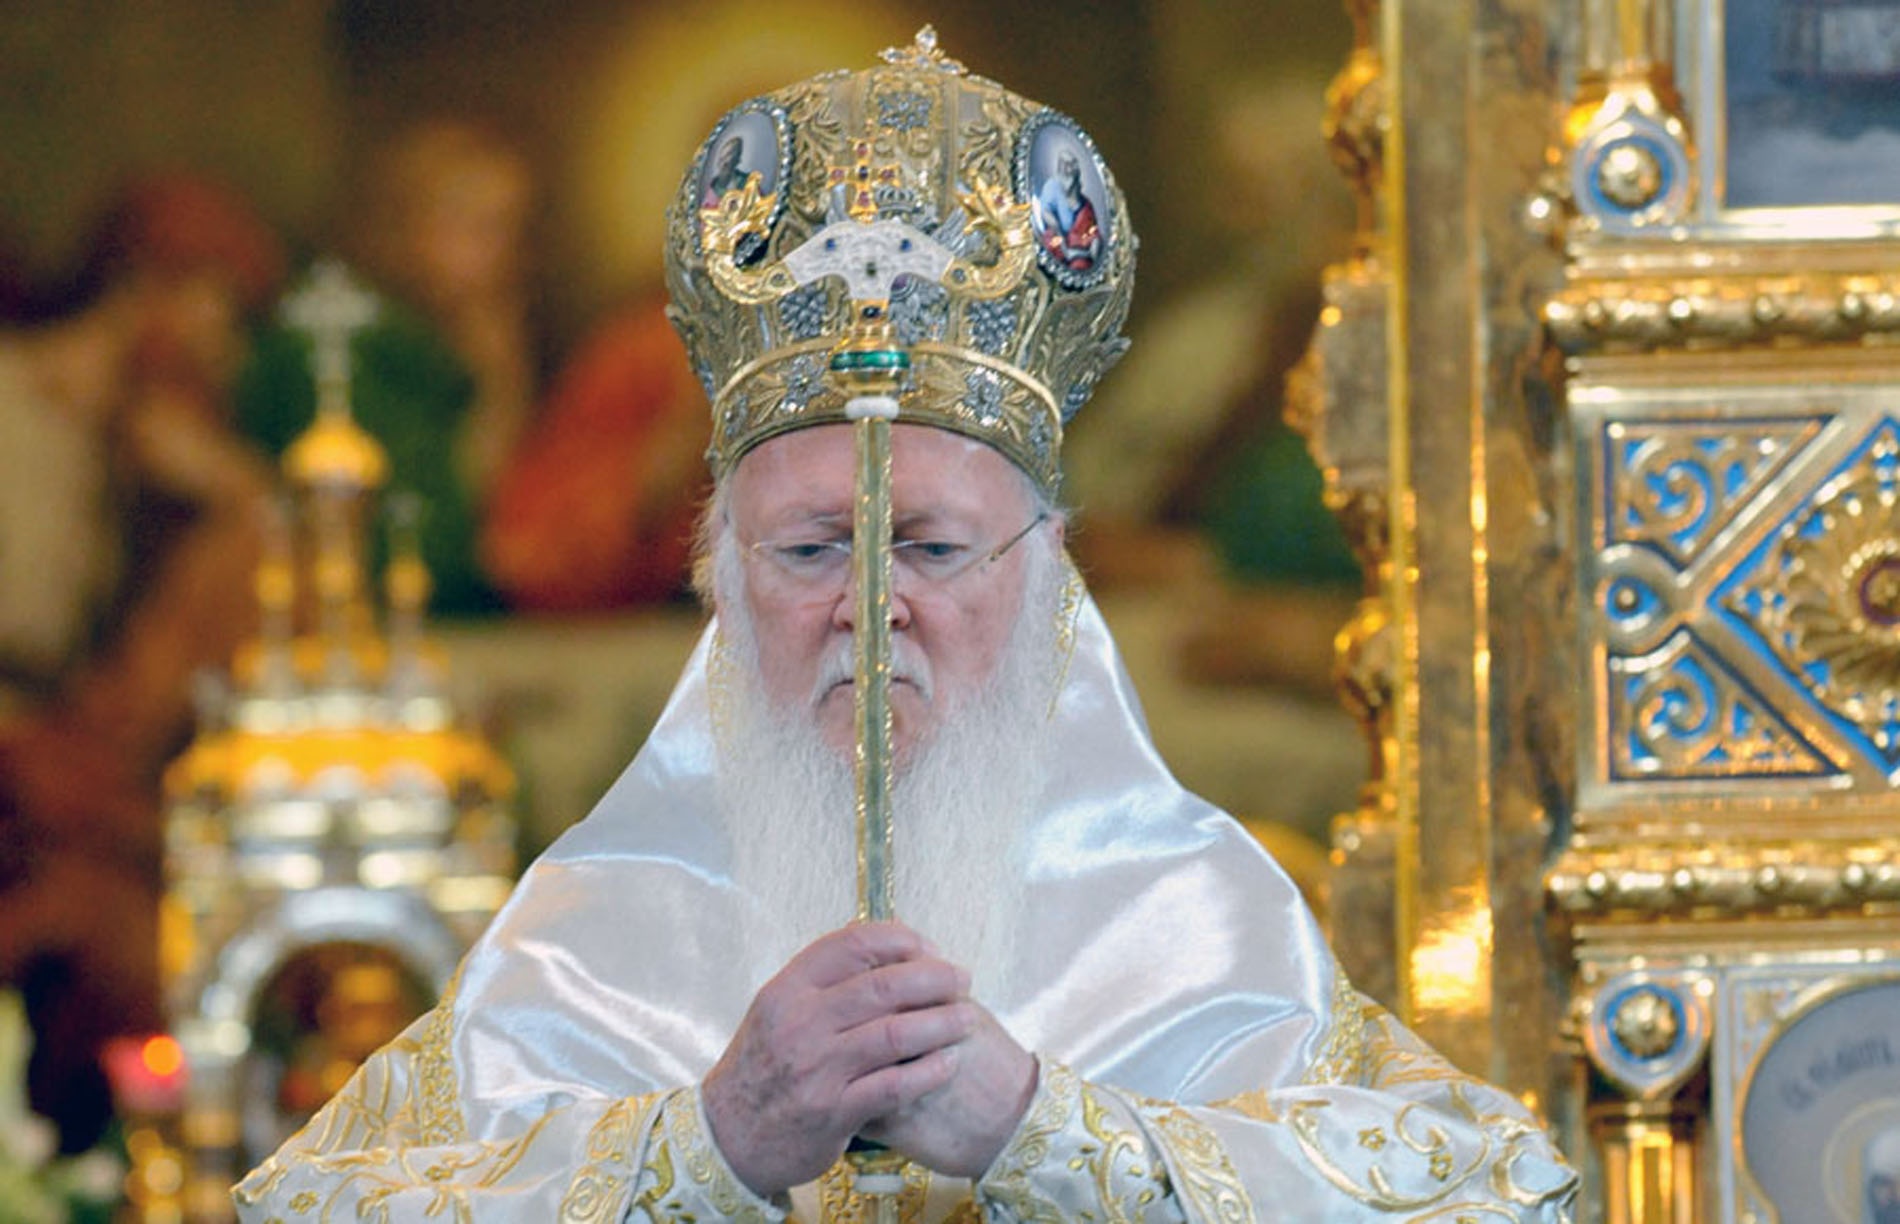 Вселенський Патріарх Варфоломій вирішив зміцнити свою роль і місце в історії, рішуче діючи не лише щодо України, а і деяких інших країн